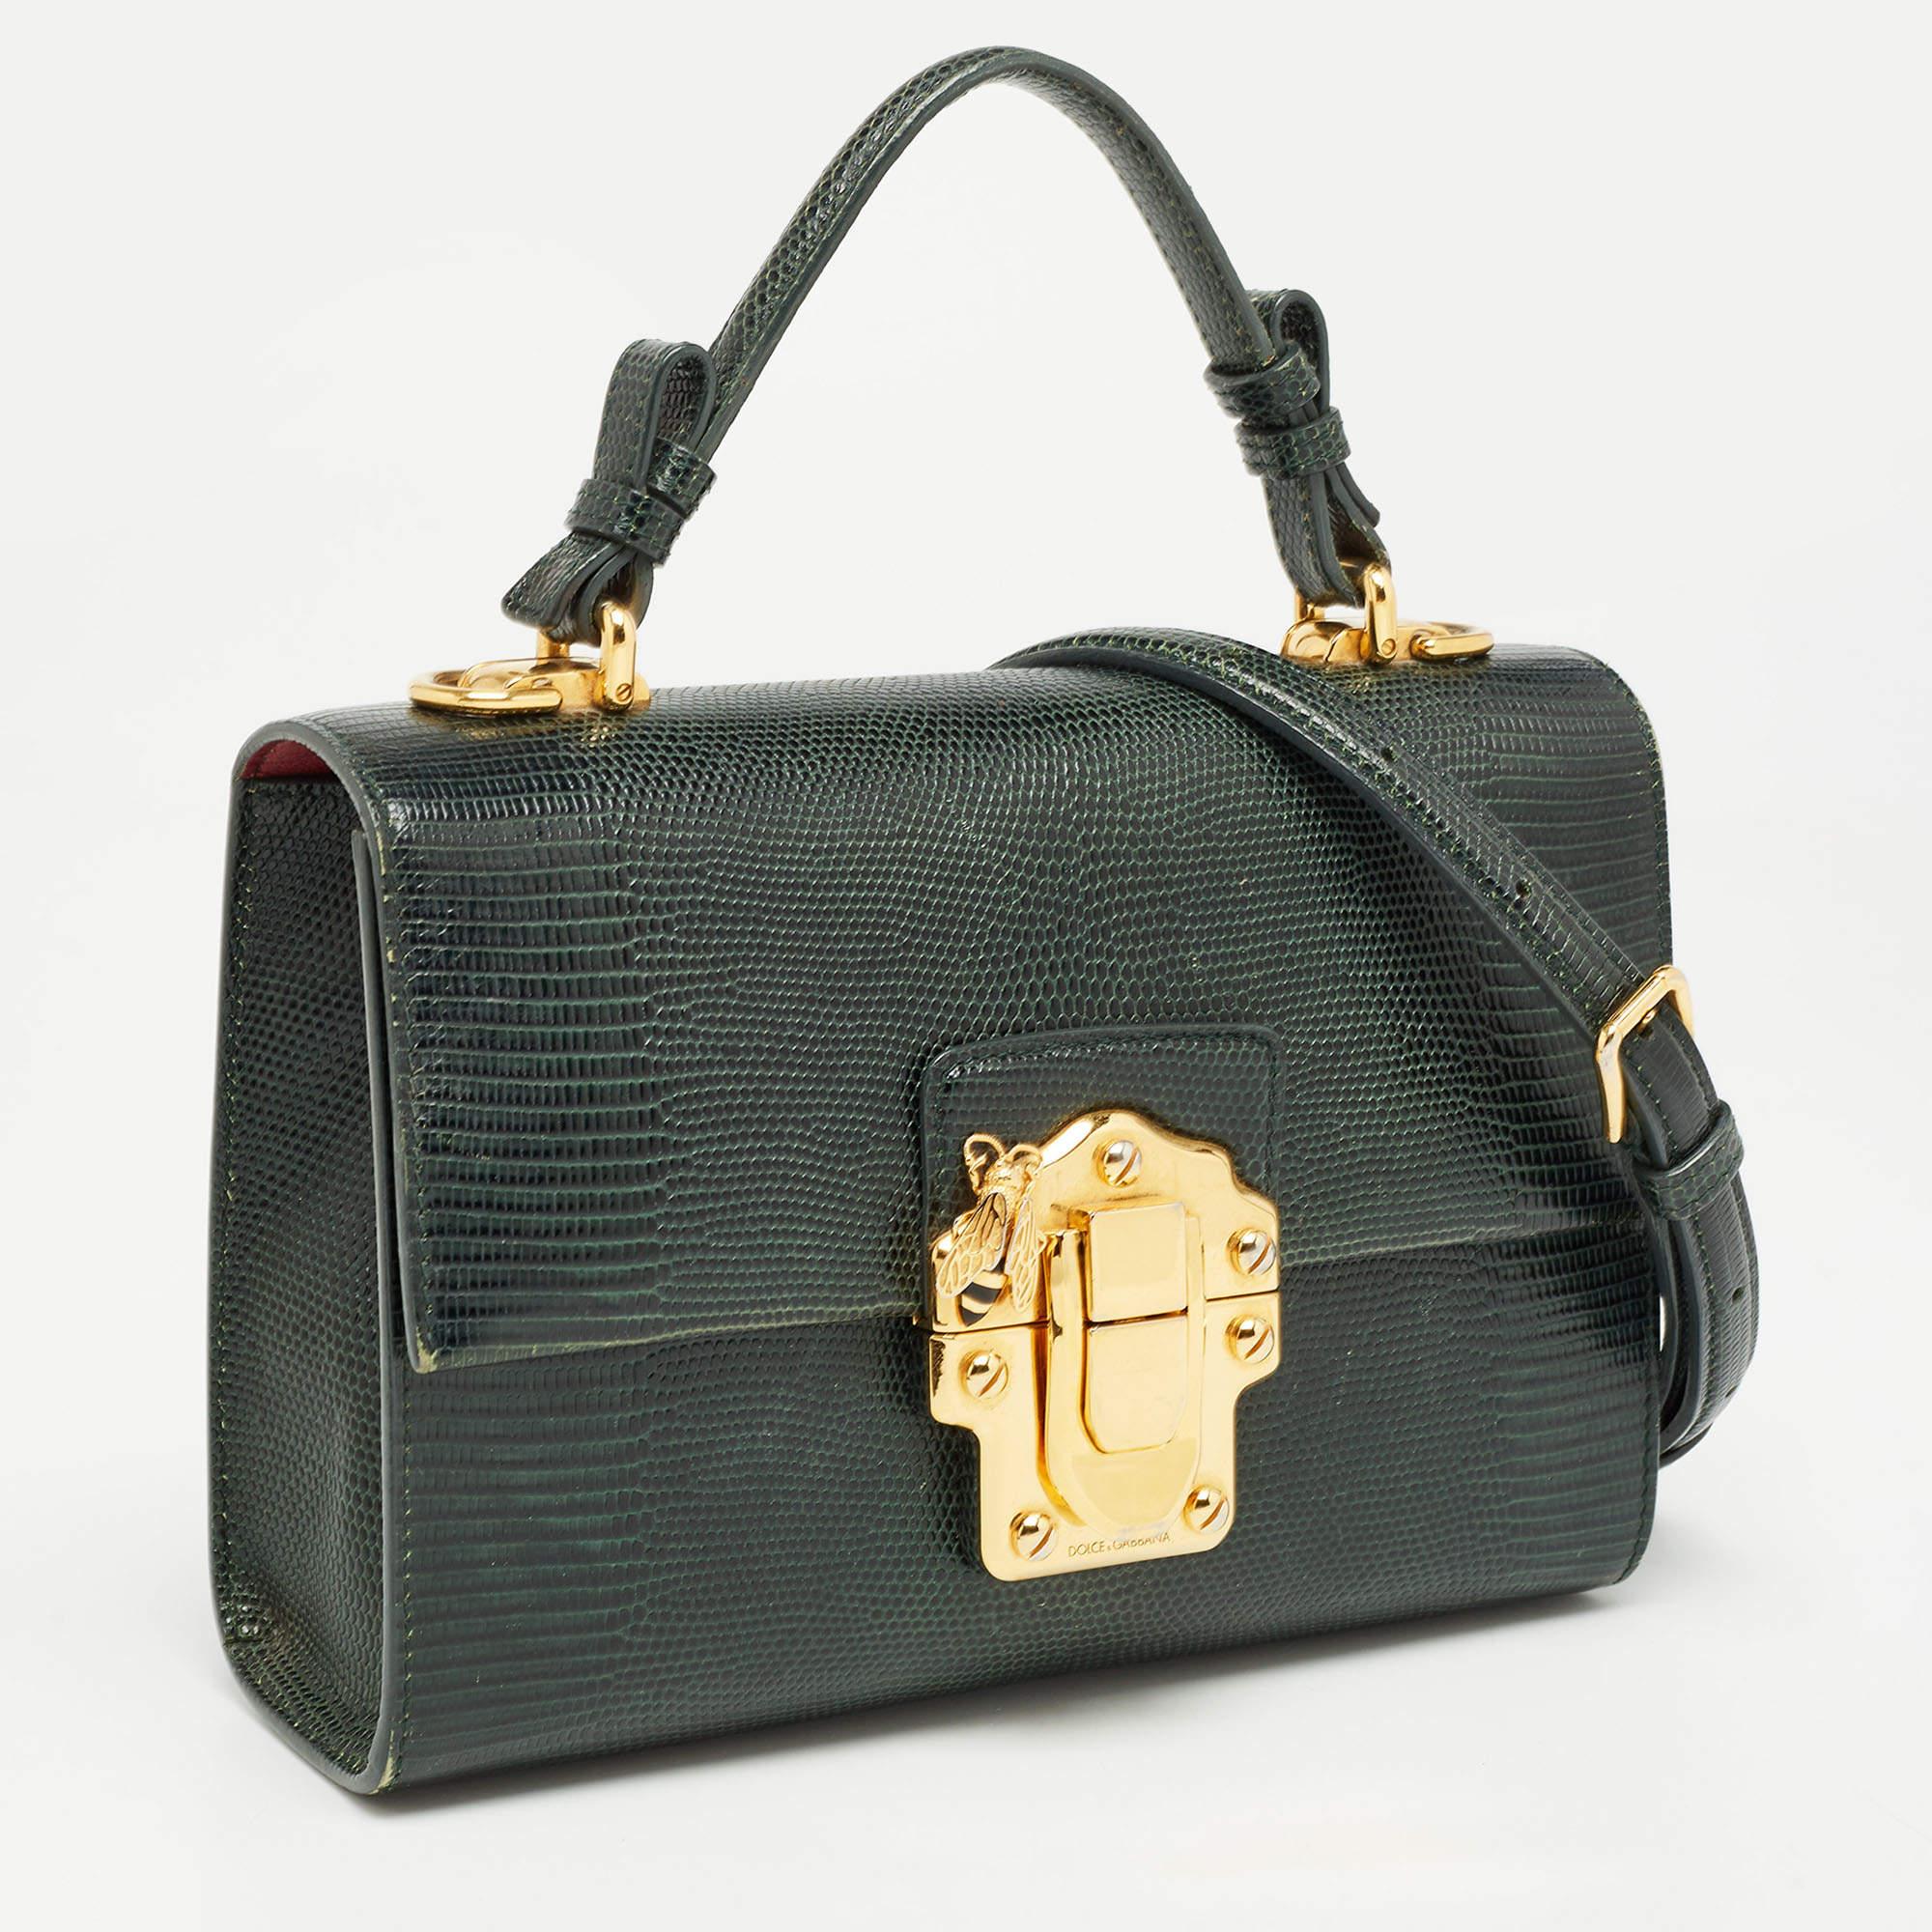 Dolce & Gabbana Dunkelgrüne Lucia Top Handle Bag aus geprägtem Leder mit Eidechsenprägung 1